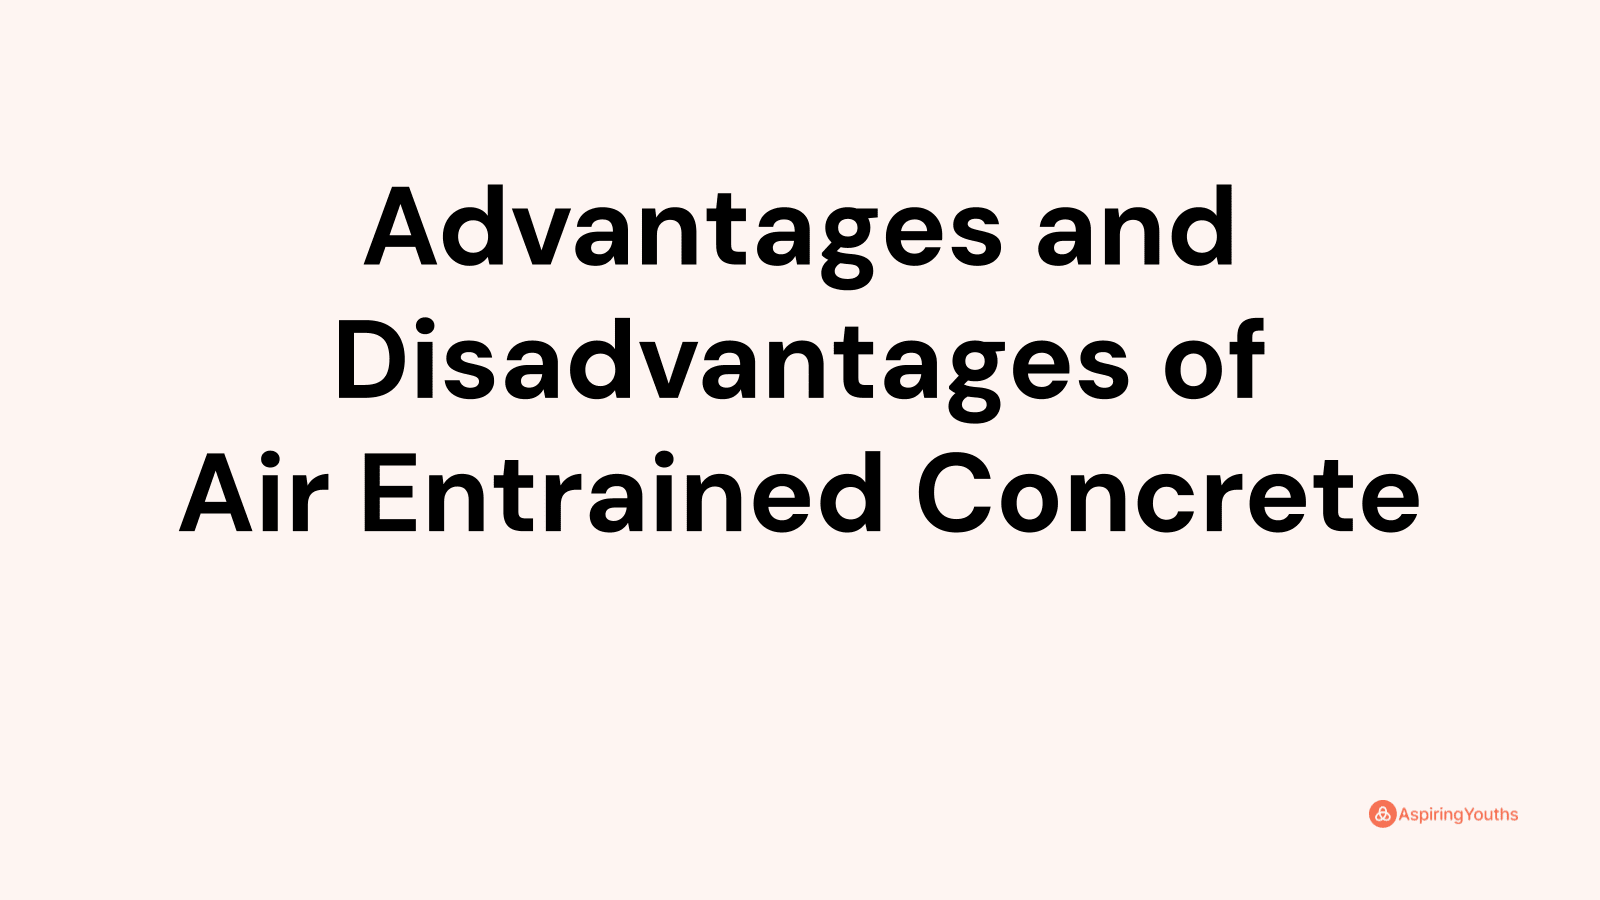 Advantages and disadvantages of Air Entrained Concrete